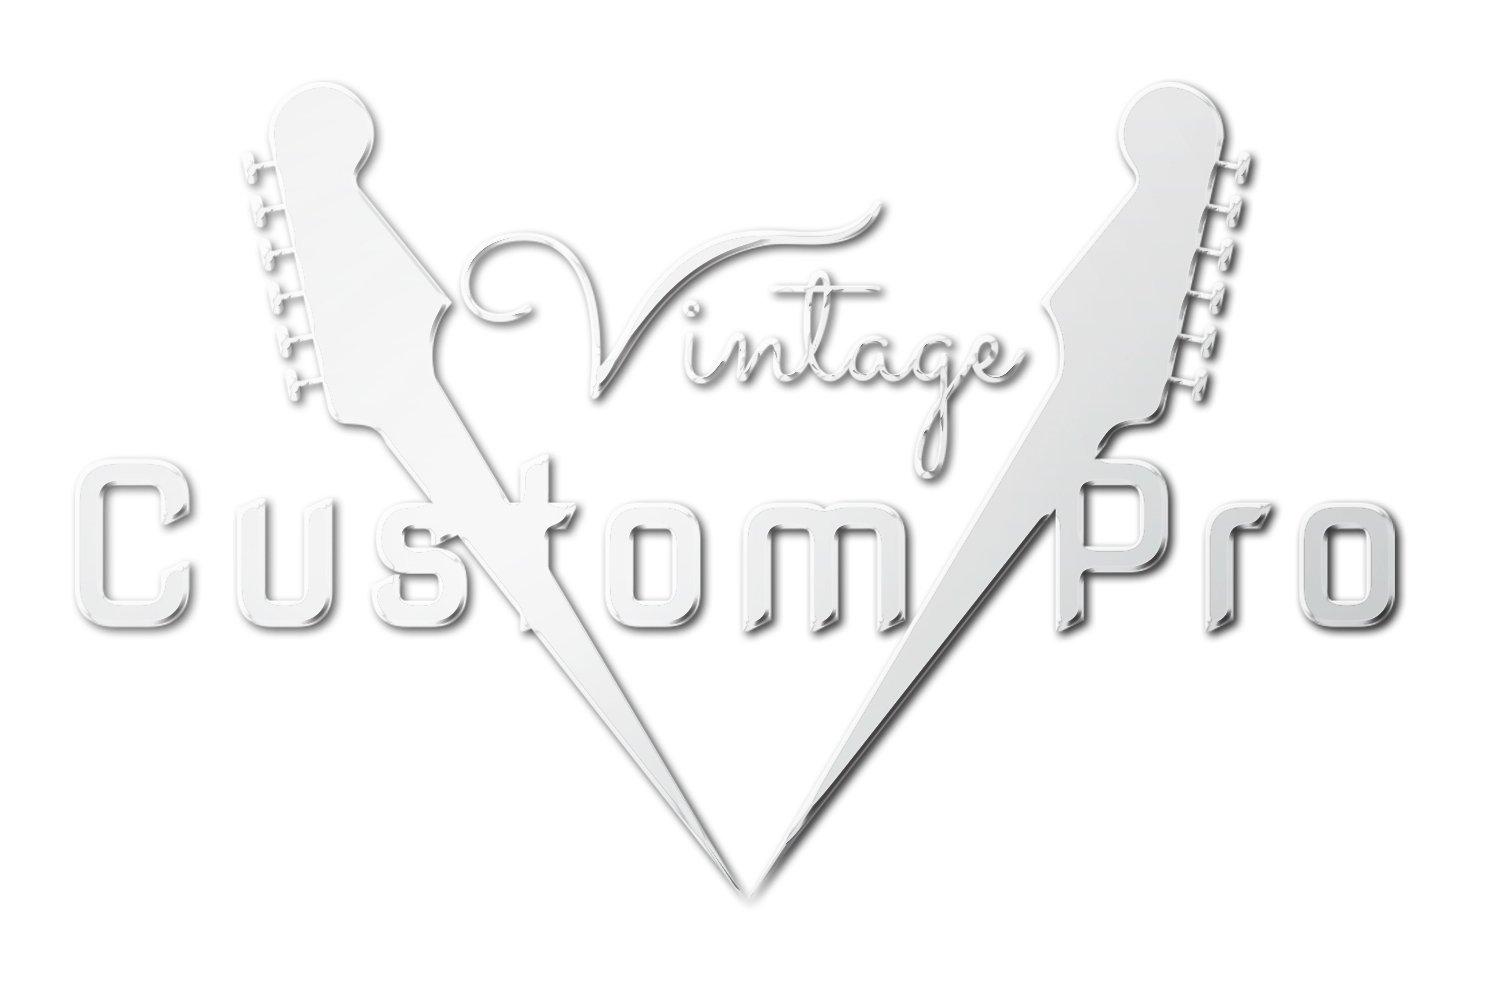 Vintage* V100BB Electric Guitar, Electric Guitar for sale at Richards Guitars.